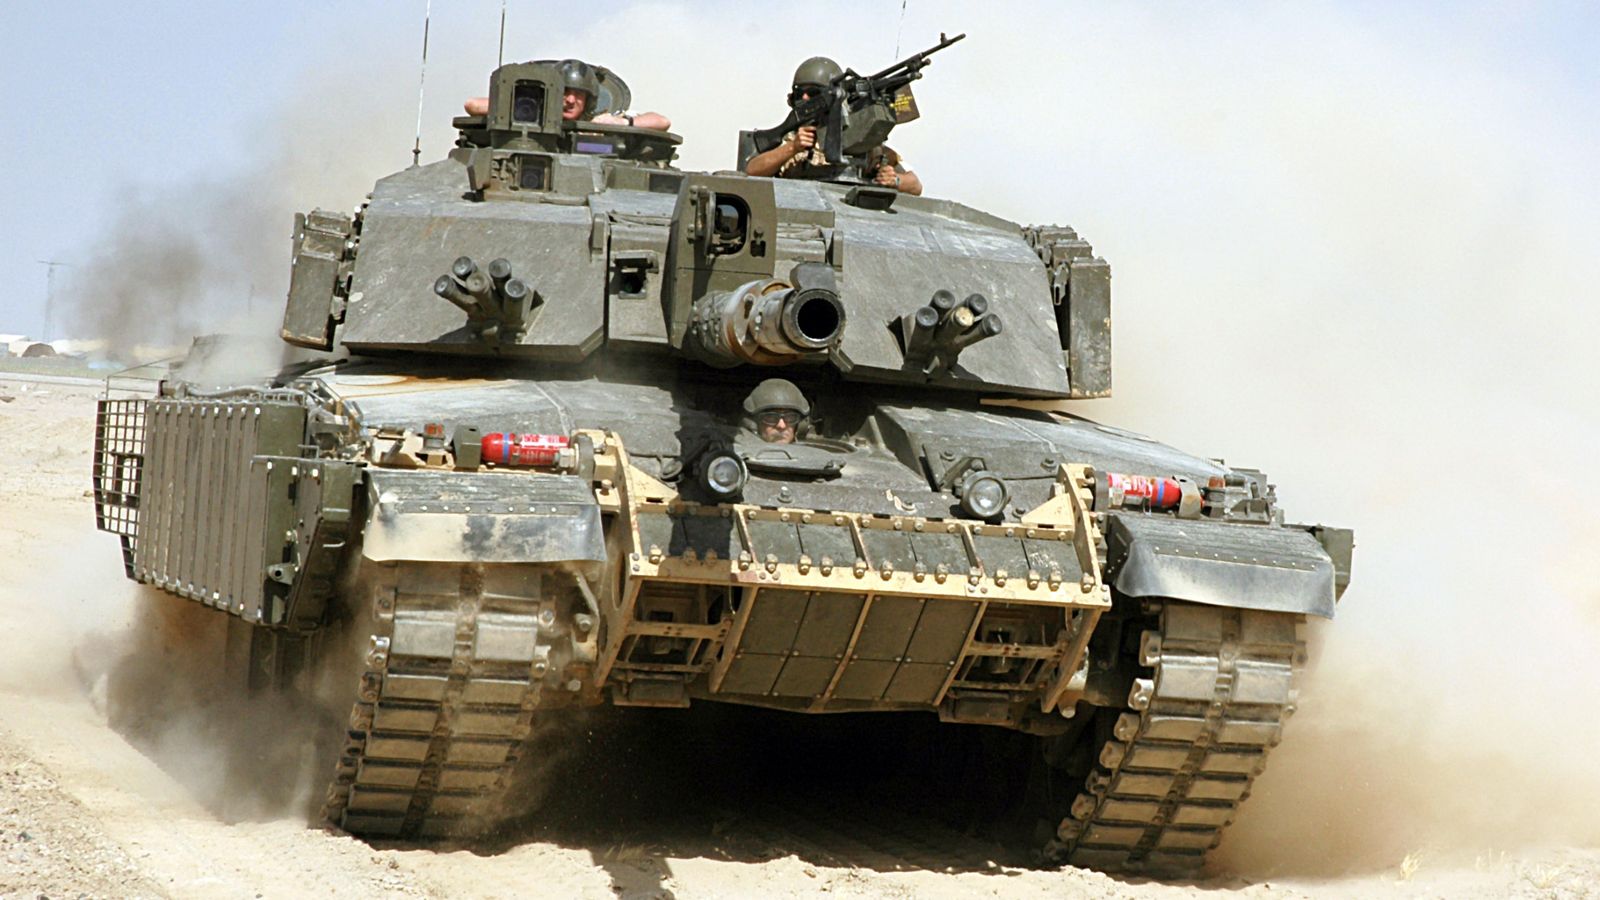 Sending Ukraine tanks weakens UK forces, says Army's top general